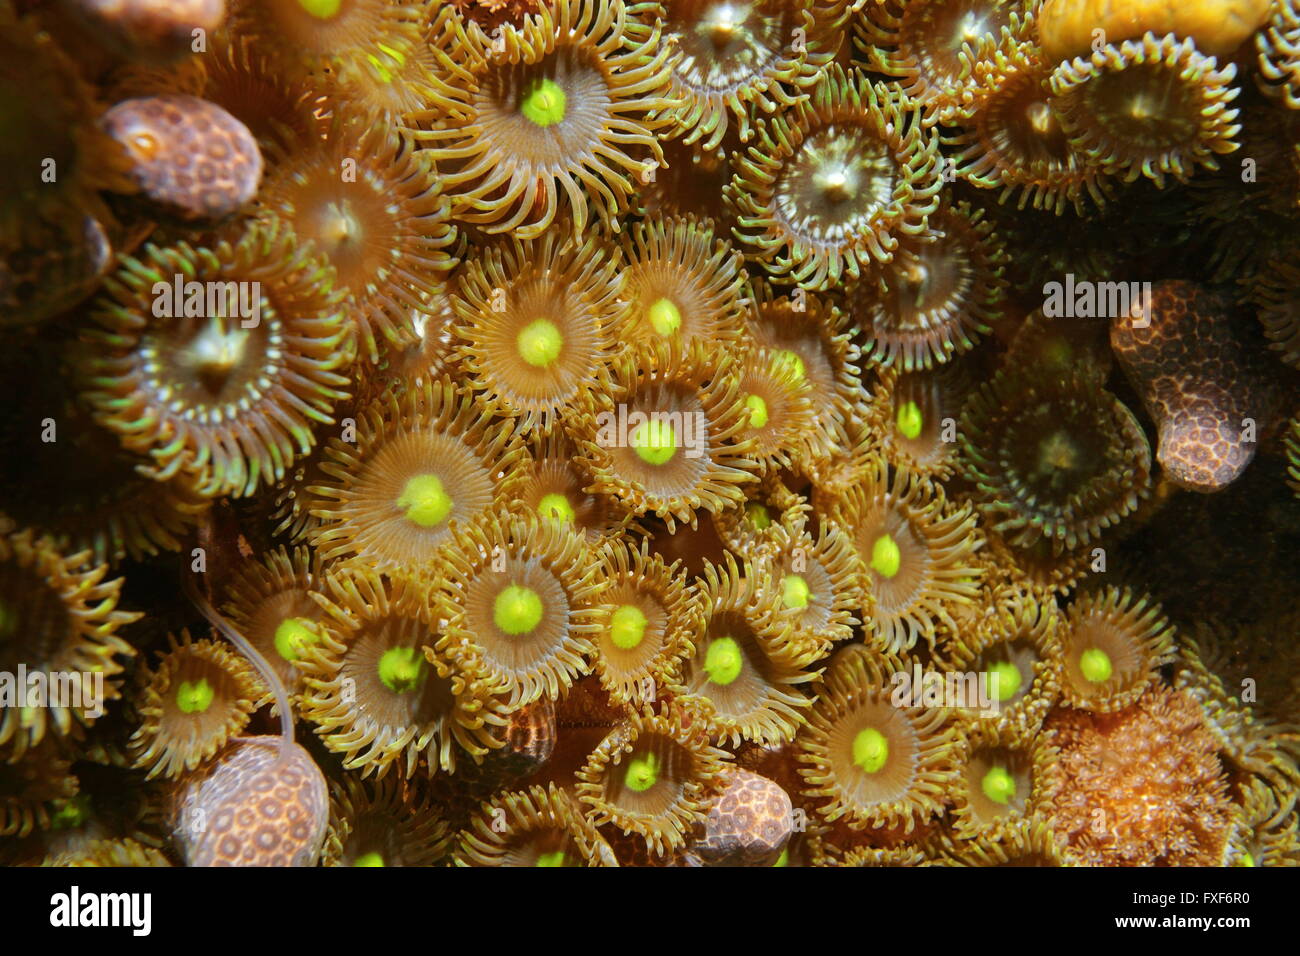 Colonie de Zoanthus pulchellus zoanthids, mat, Close up, Fonds sous-marins de la vie marine, mer des Caraïbes Banque D'Images